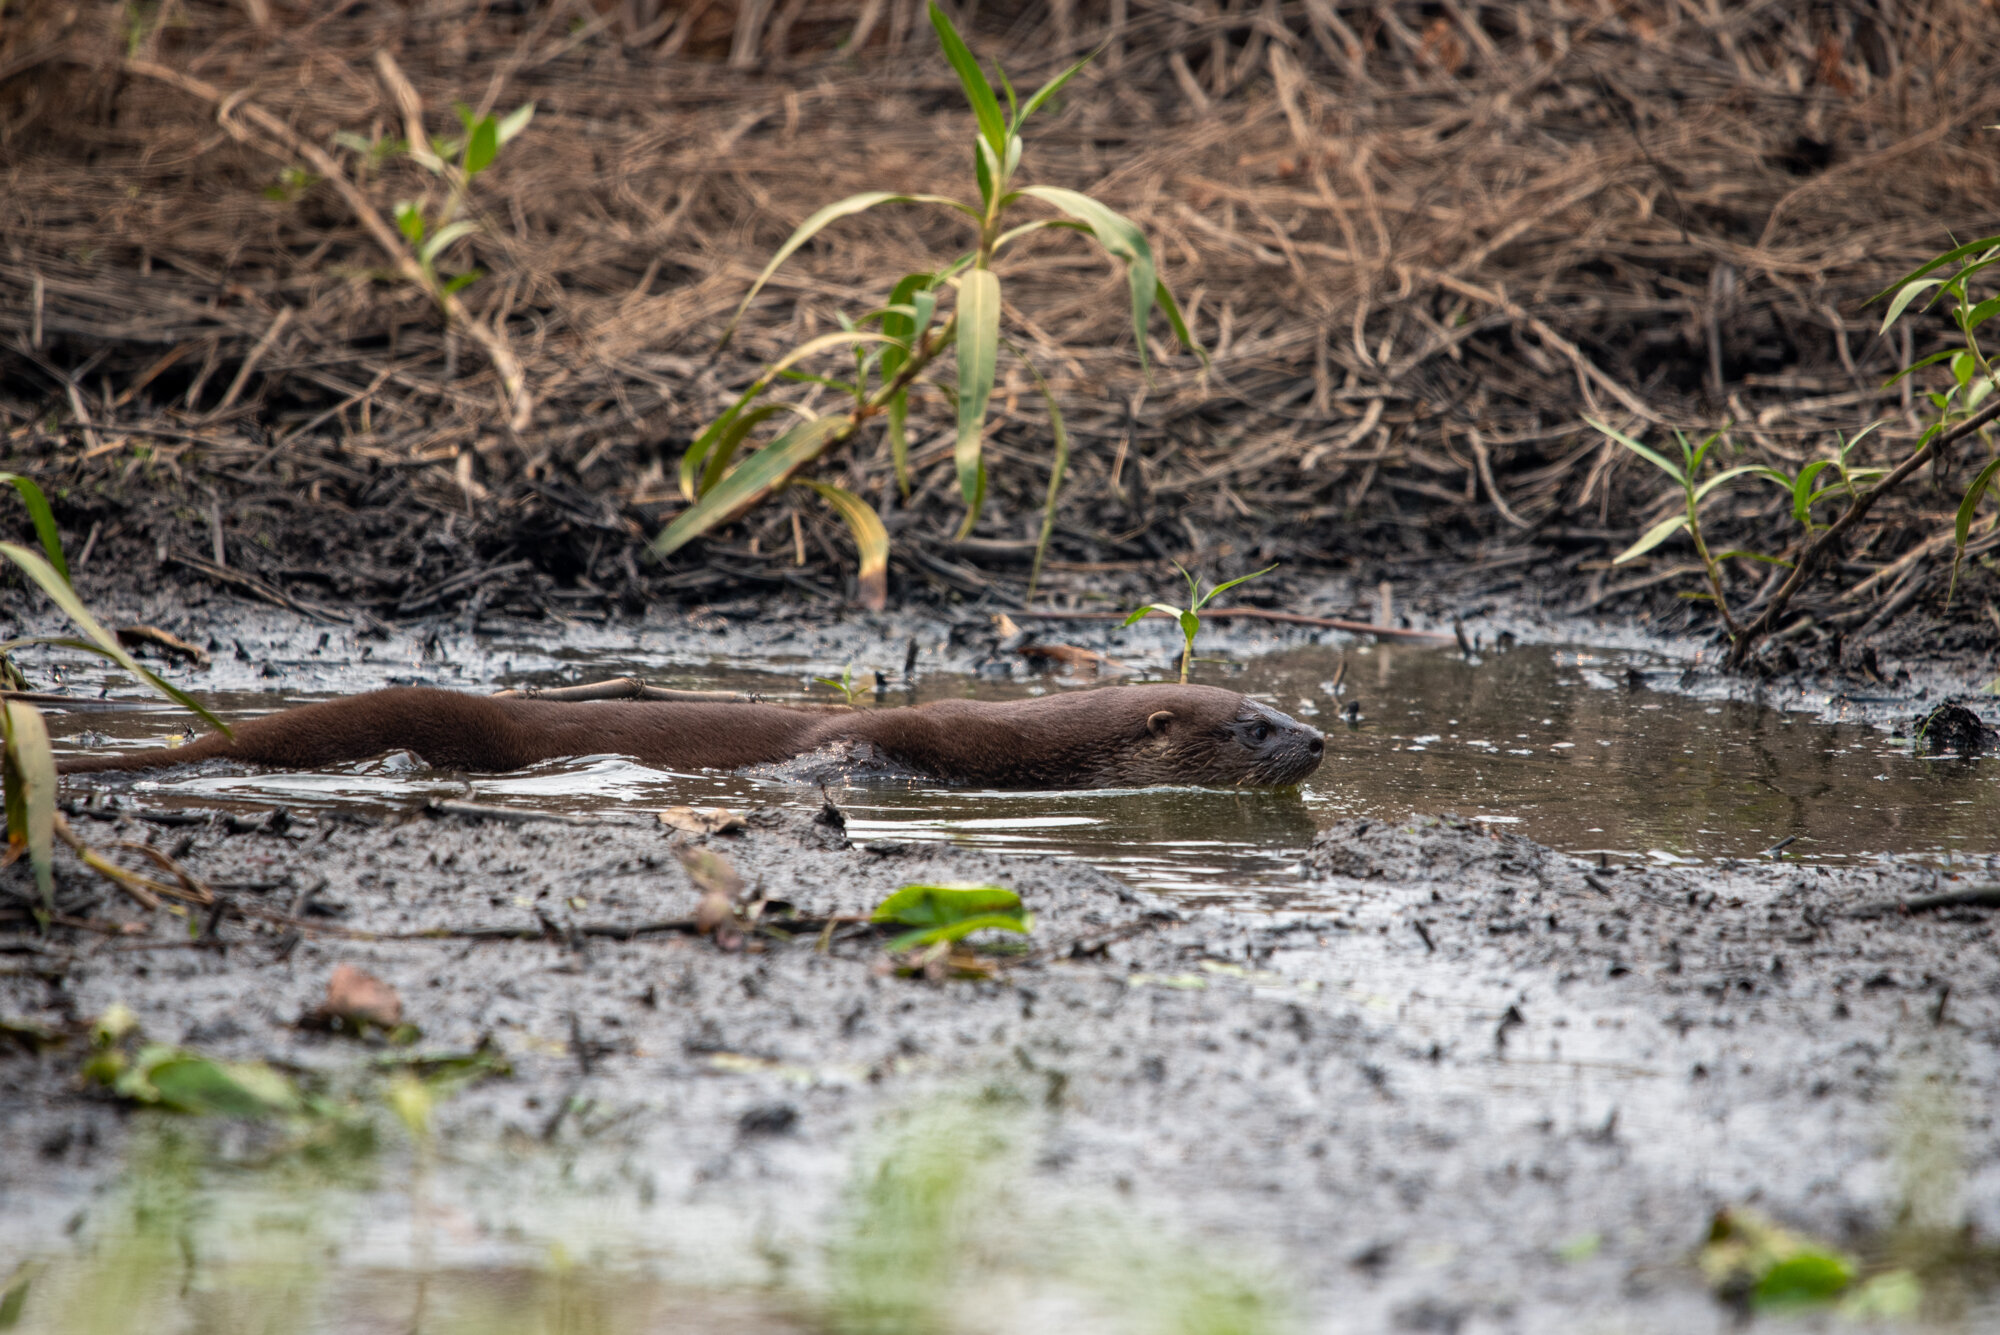 Lontra em meio à mata devastada no Pantanal no município de Poconé, Mato Grosso